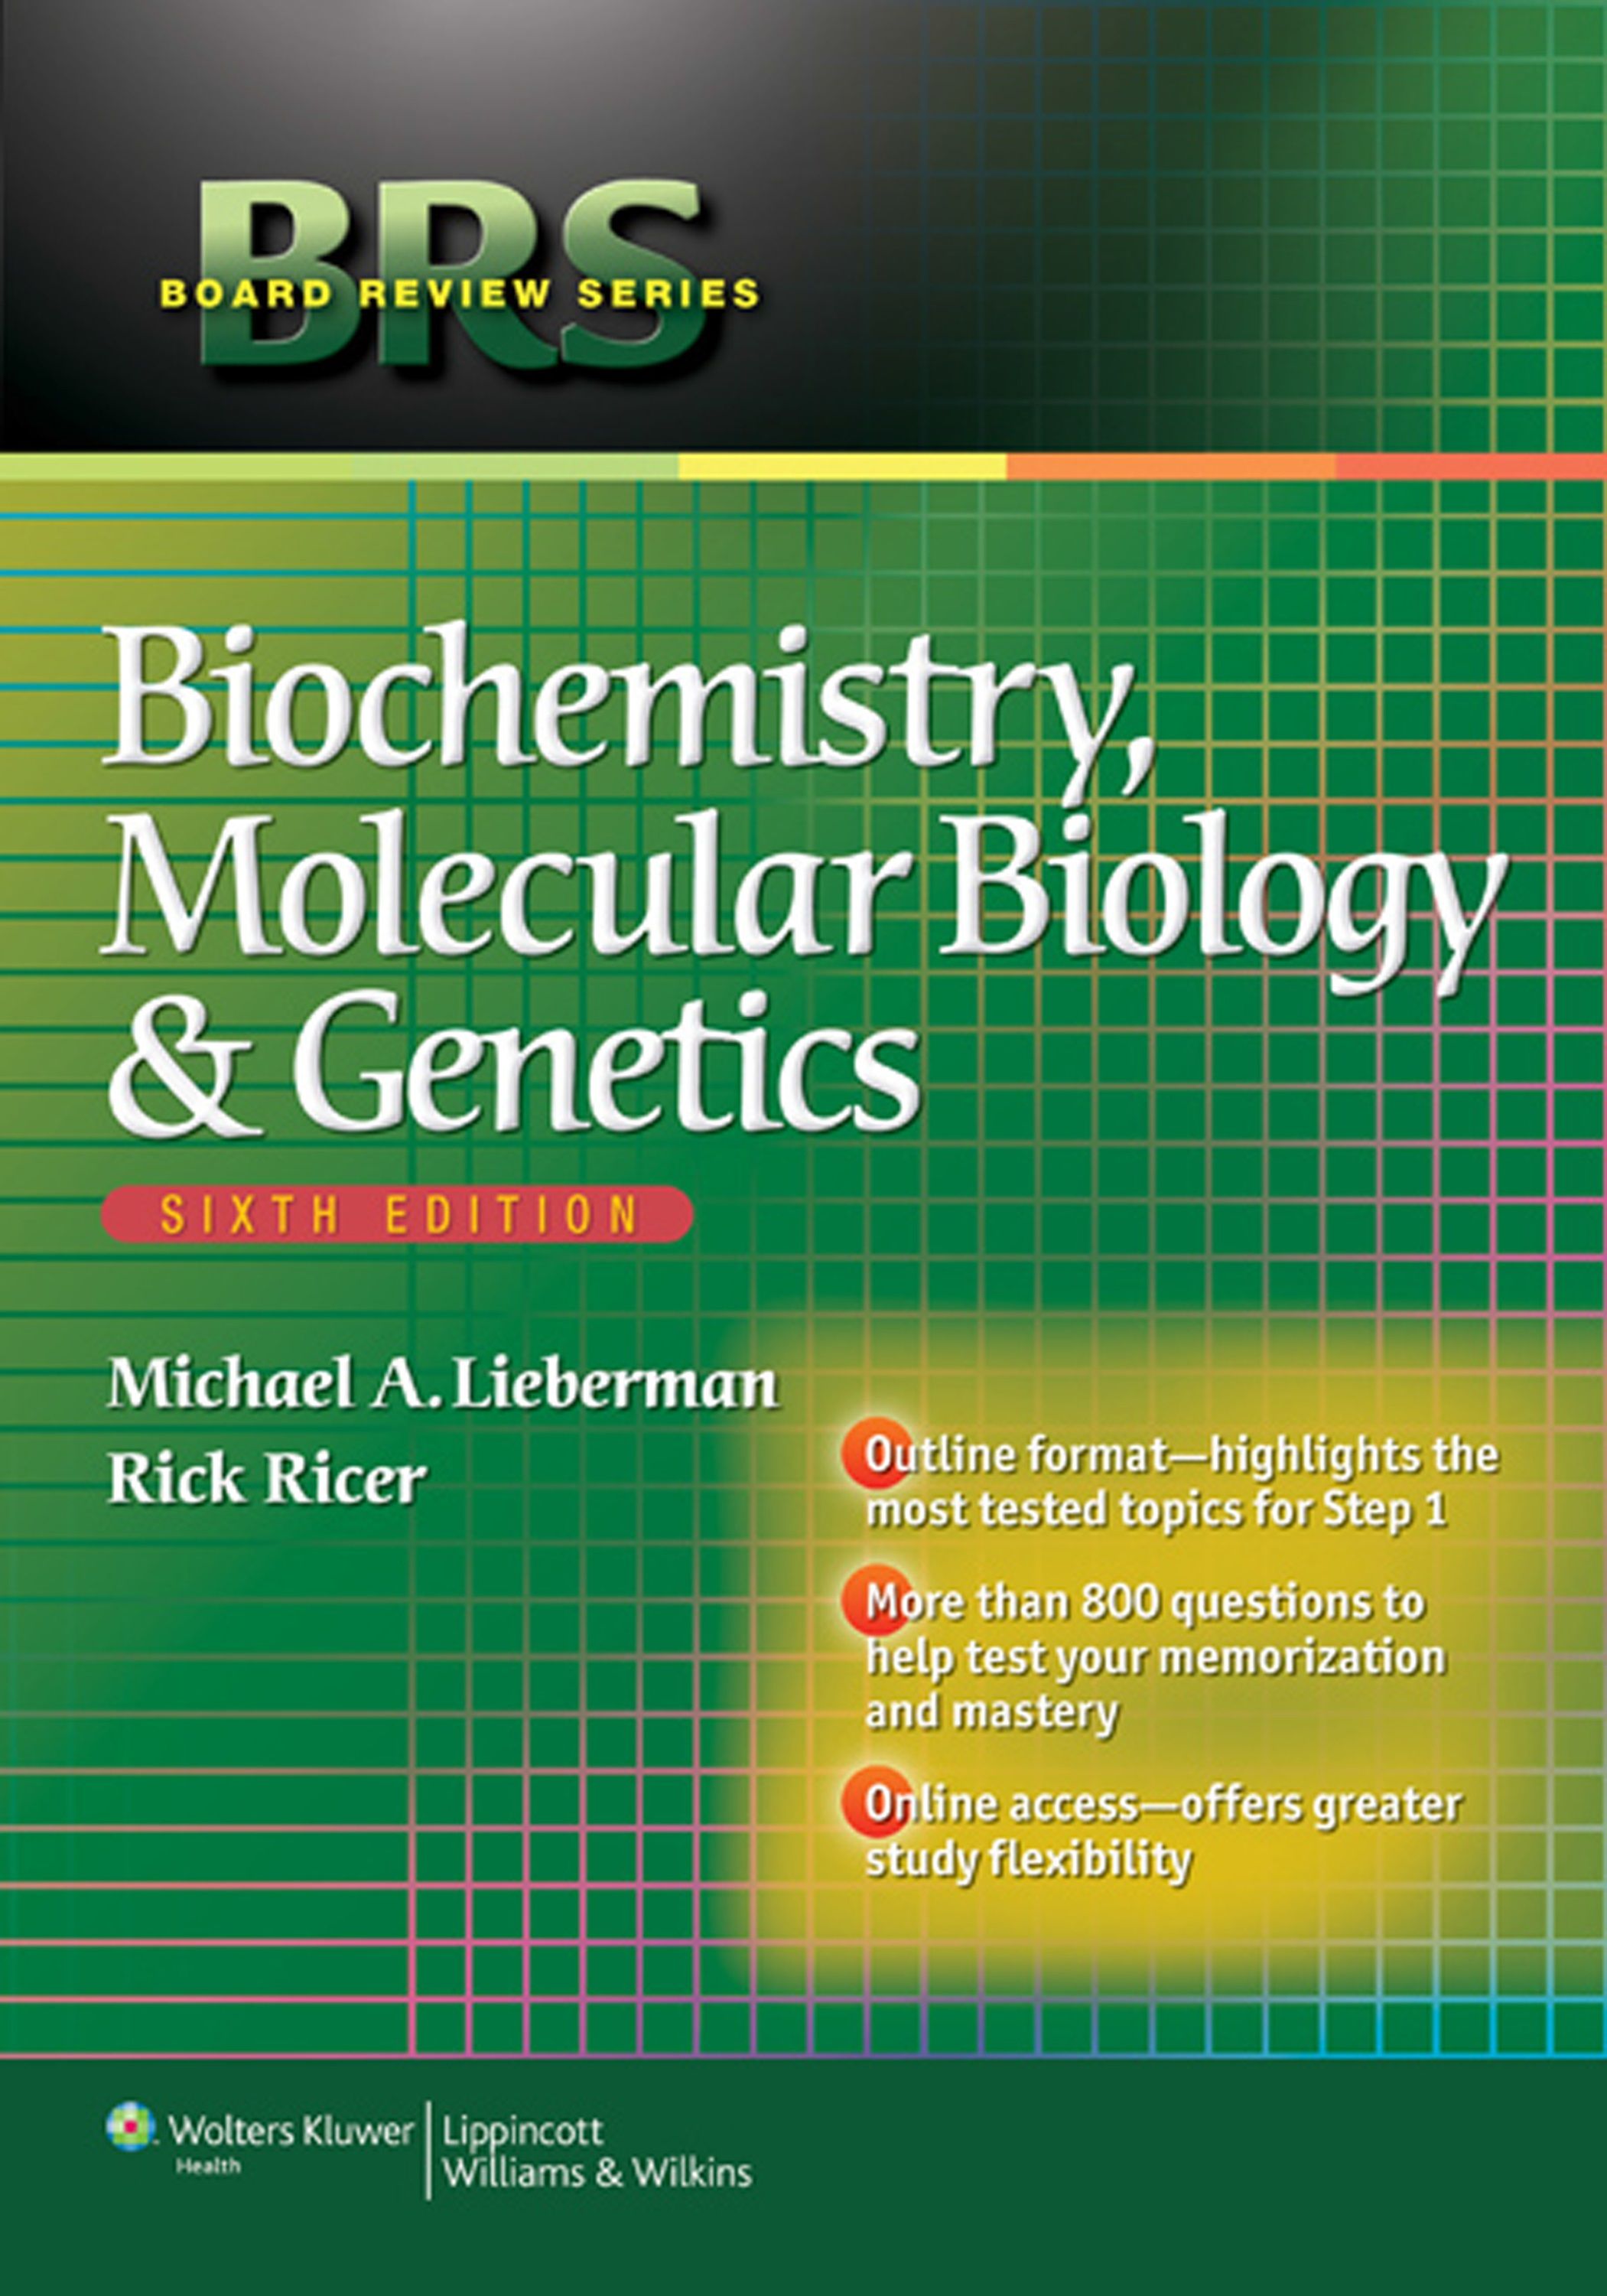 essential biology 6th edition pdf